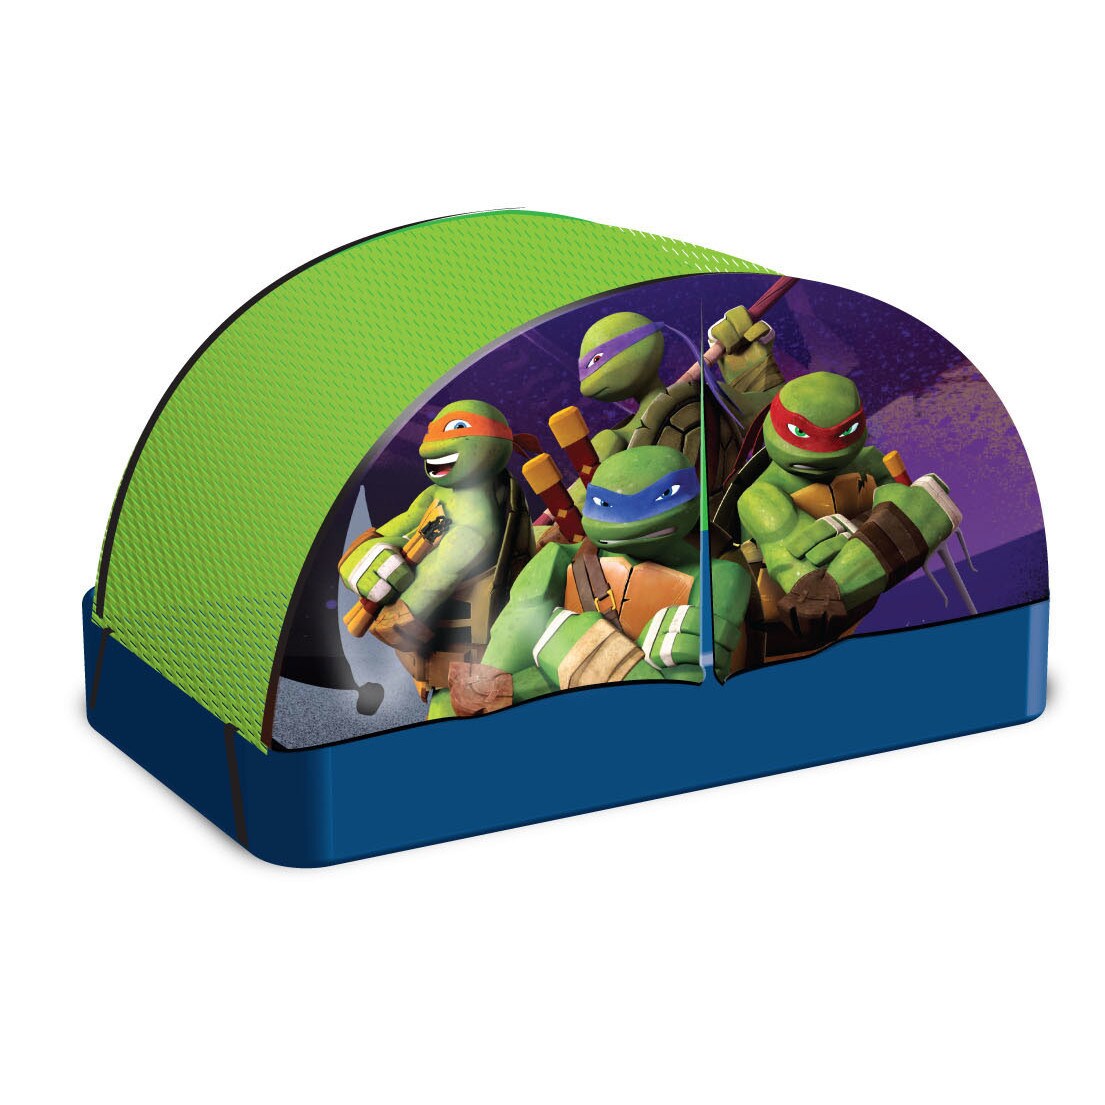 Ninja Turtle Food Tent